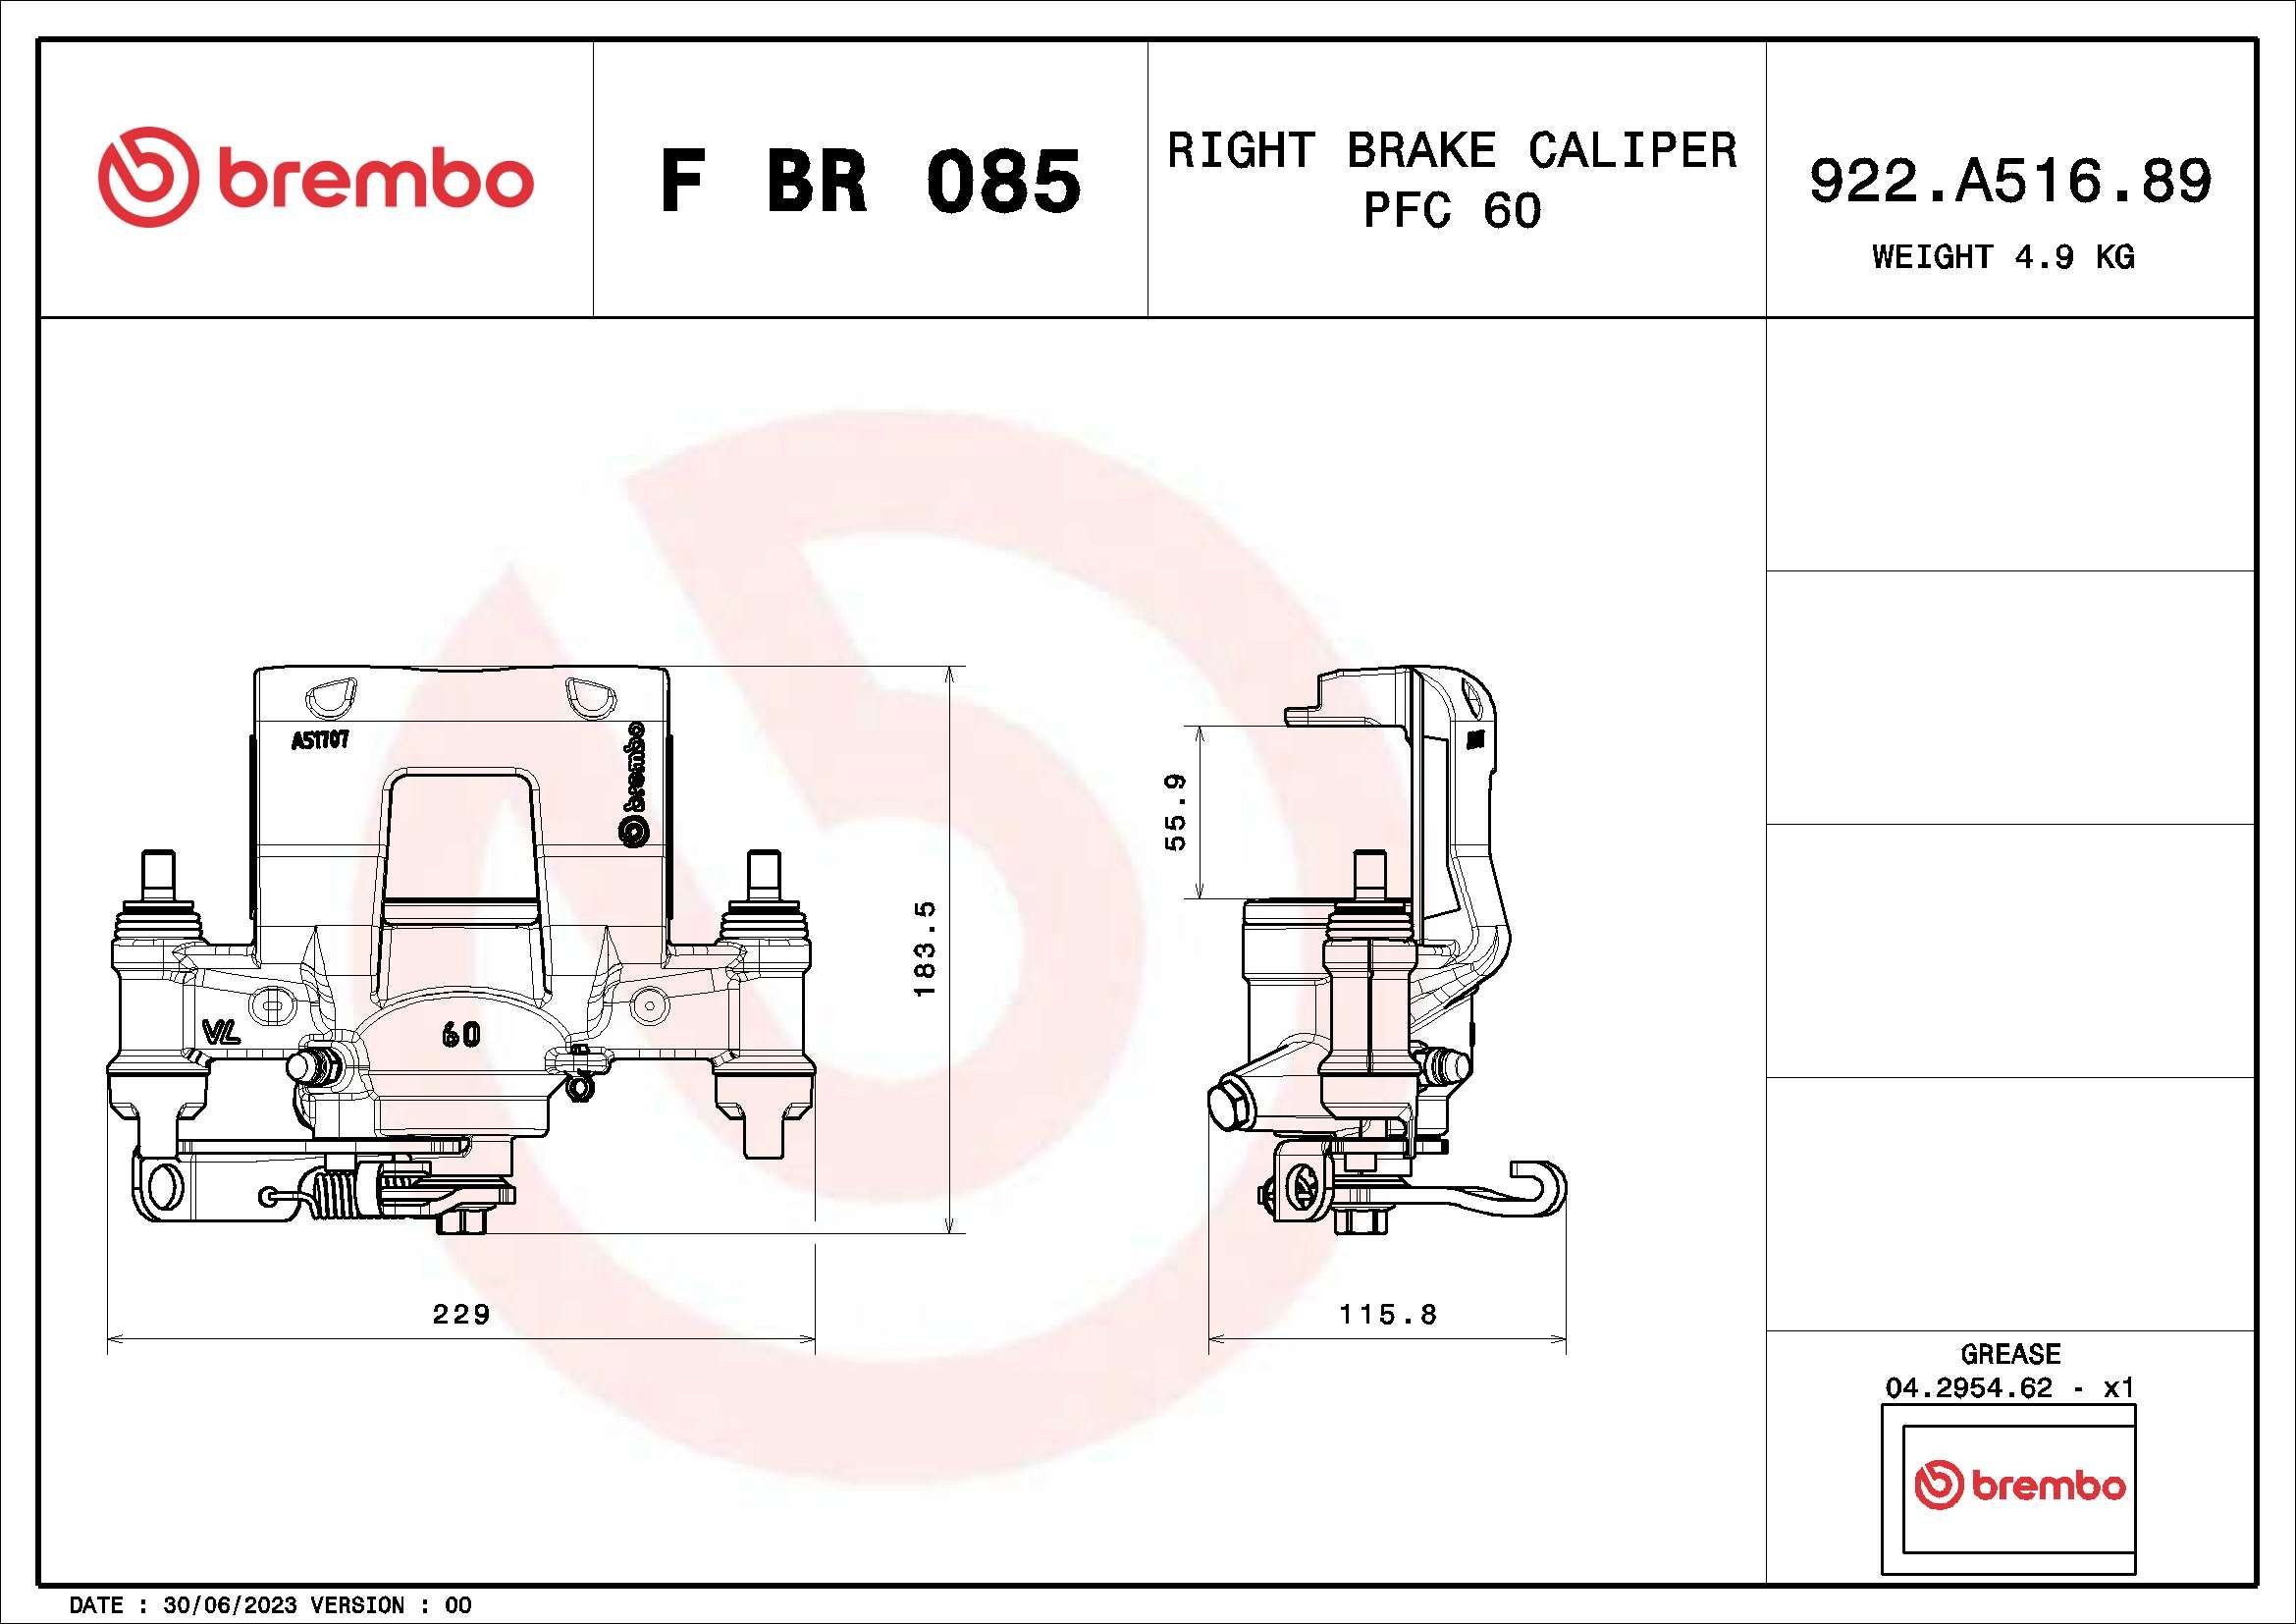 BREMBO Calipers F BR 085